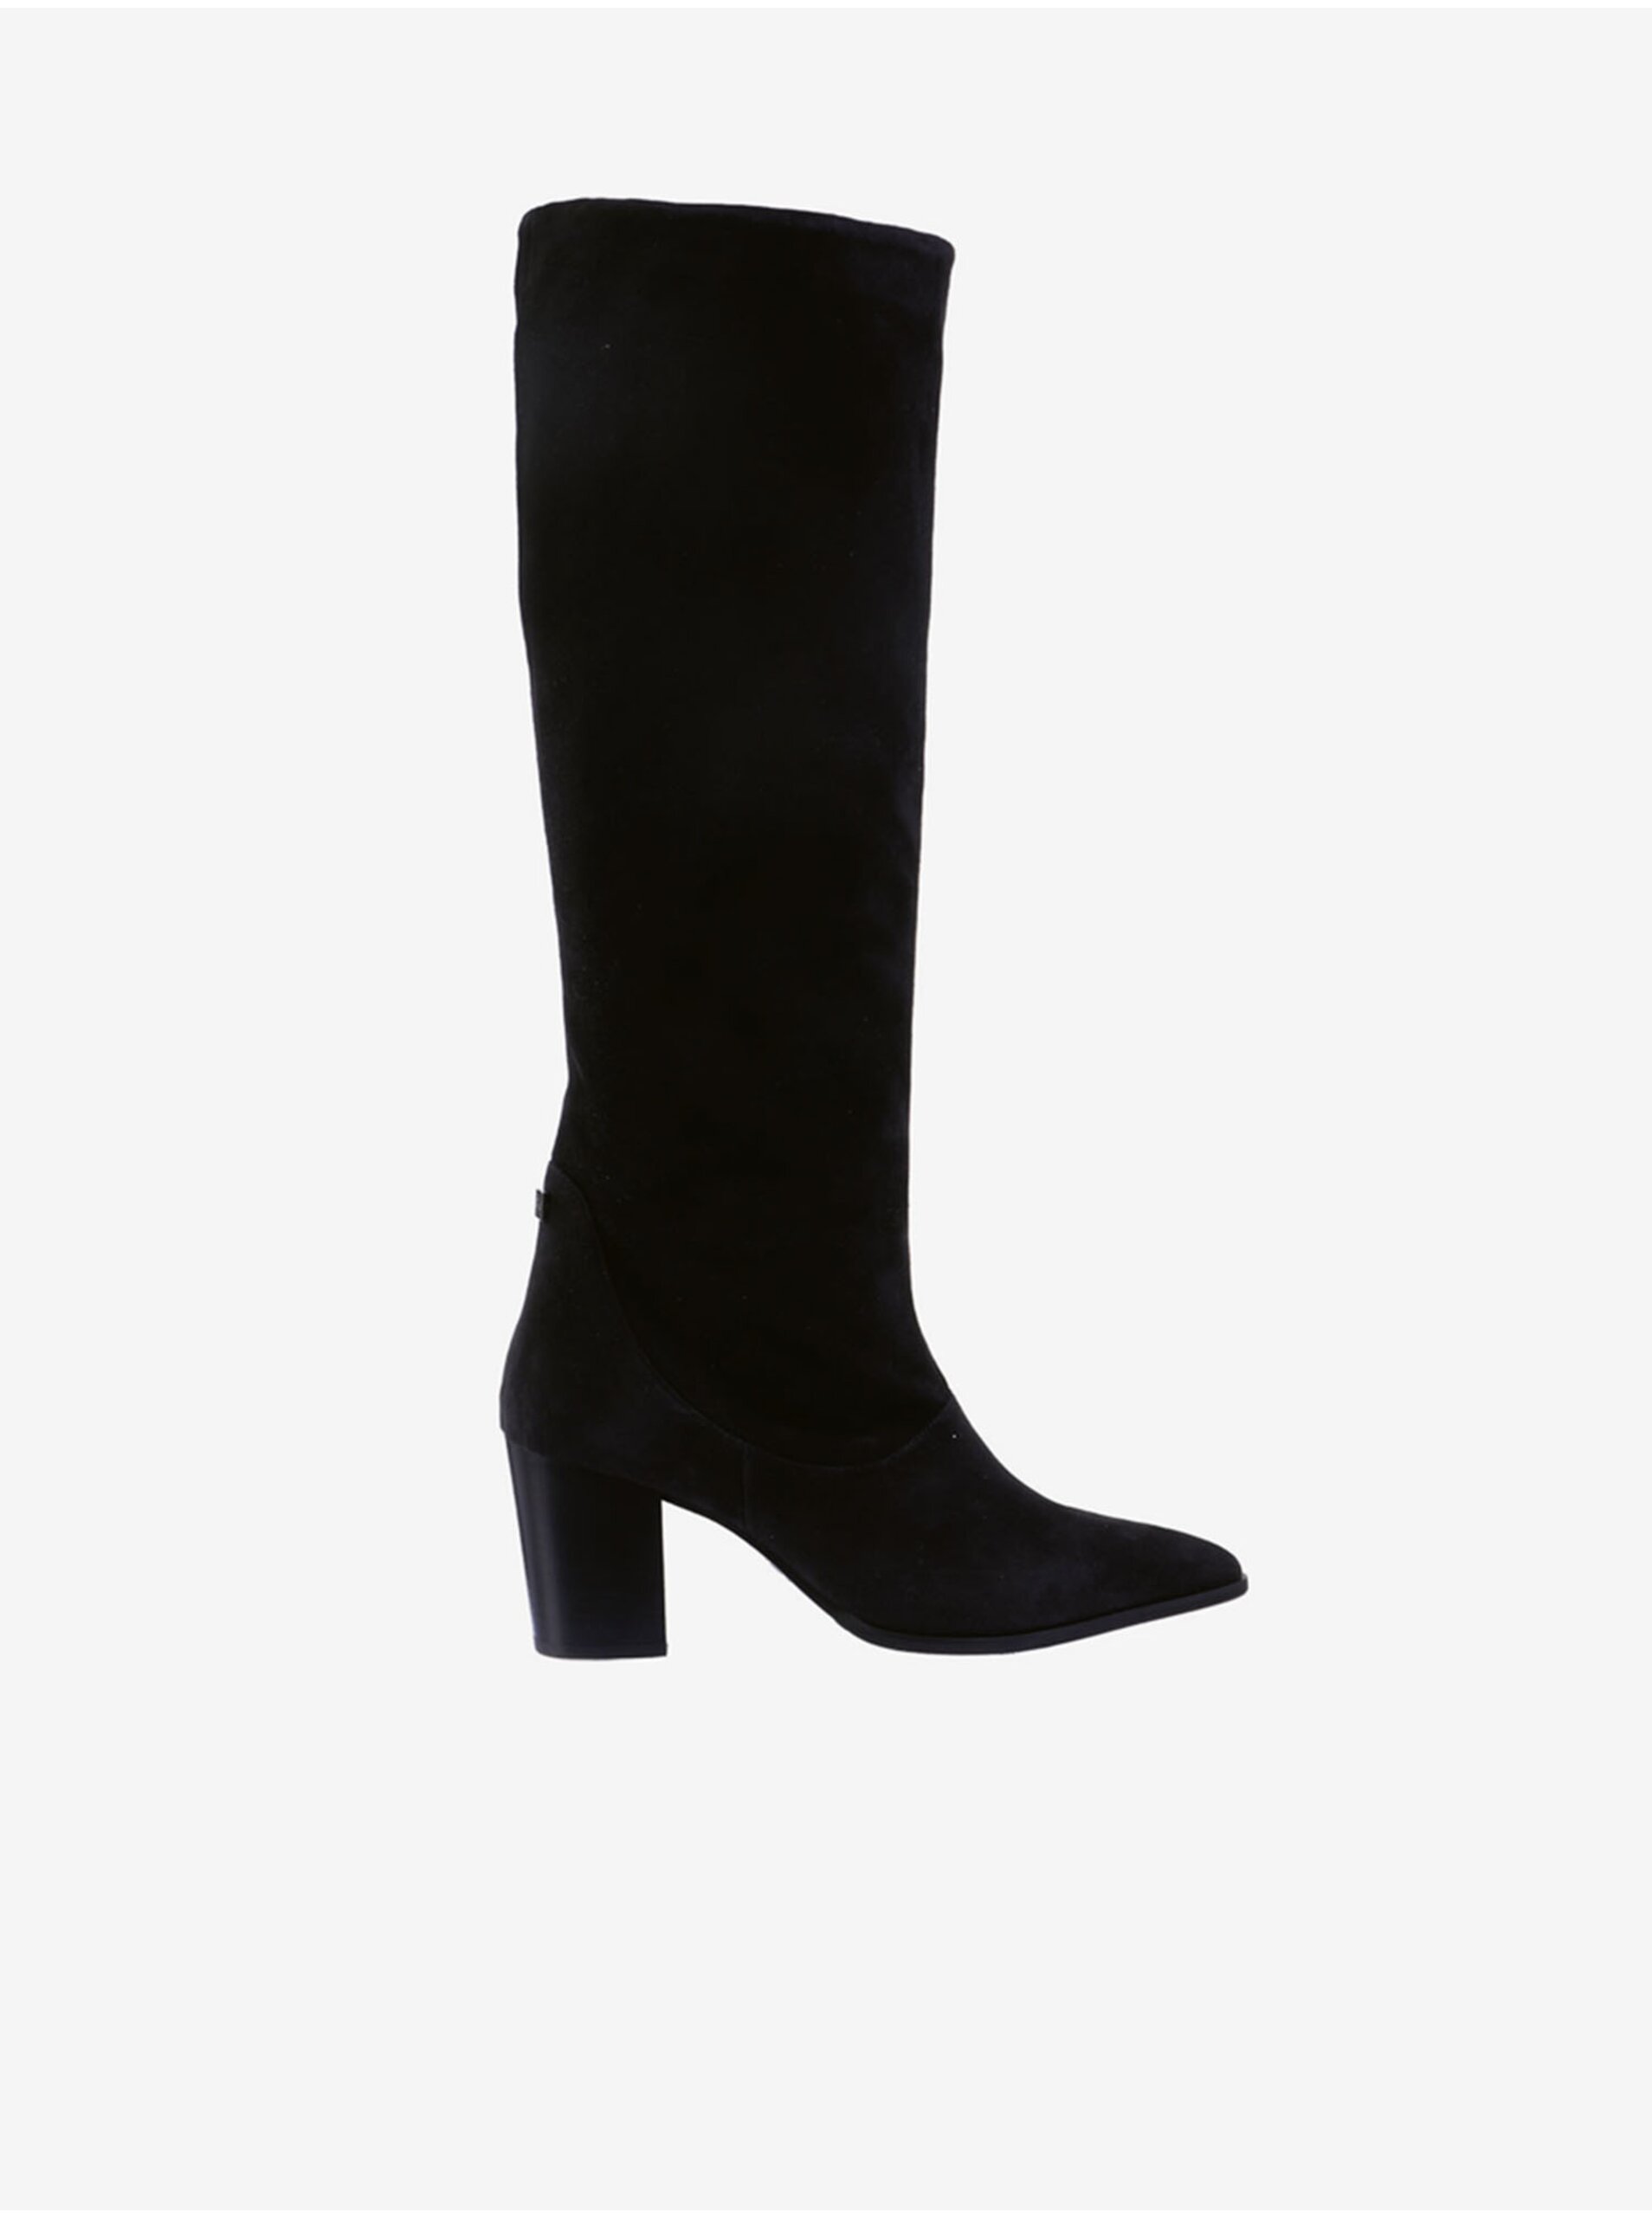 E-shop Čierne dámske semišové čižmy na podpätku Högl Dress Up